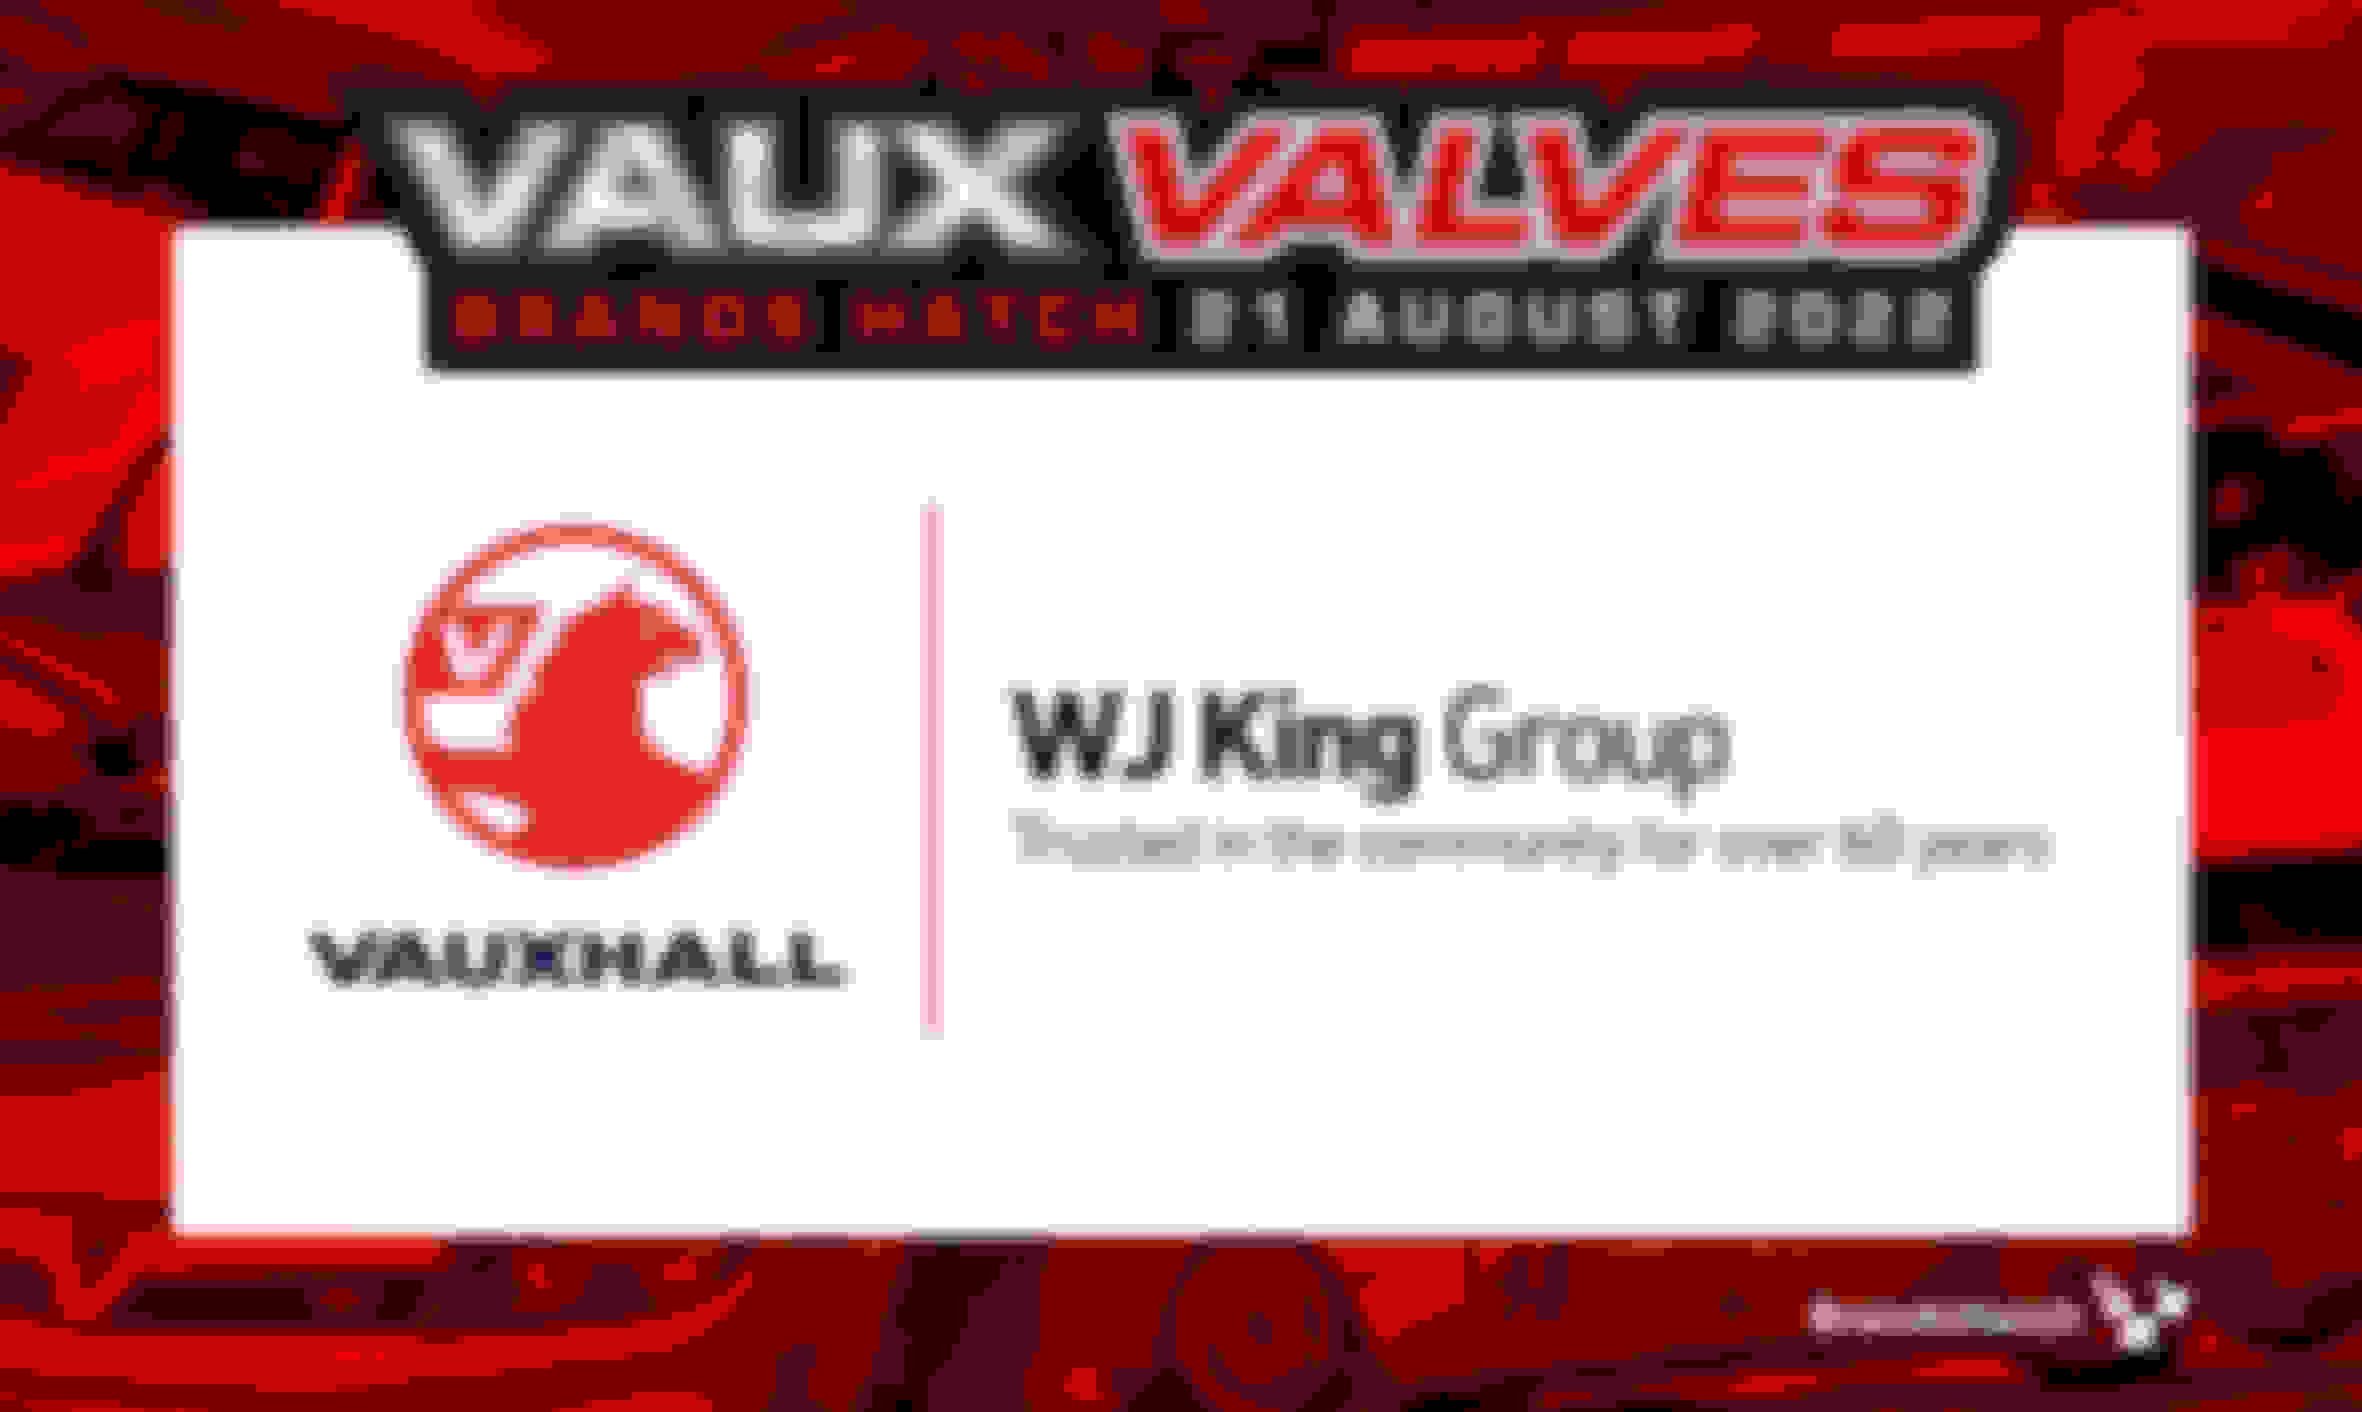 Vauxhall Main Dealer - WJ KIng